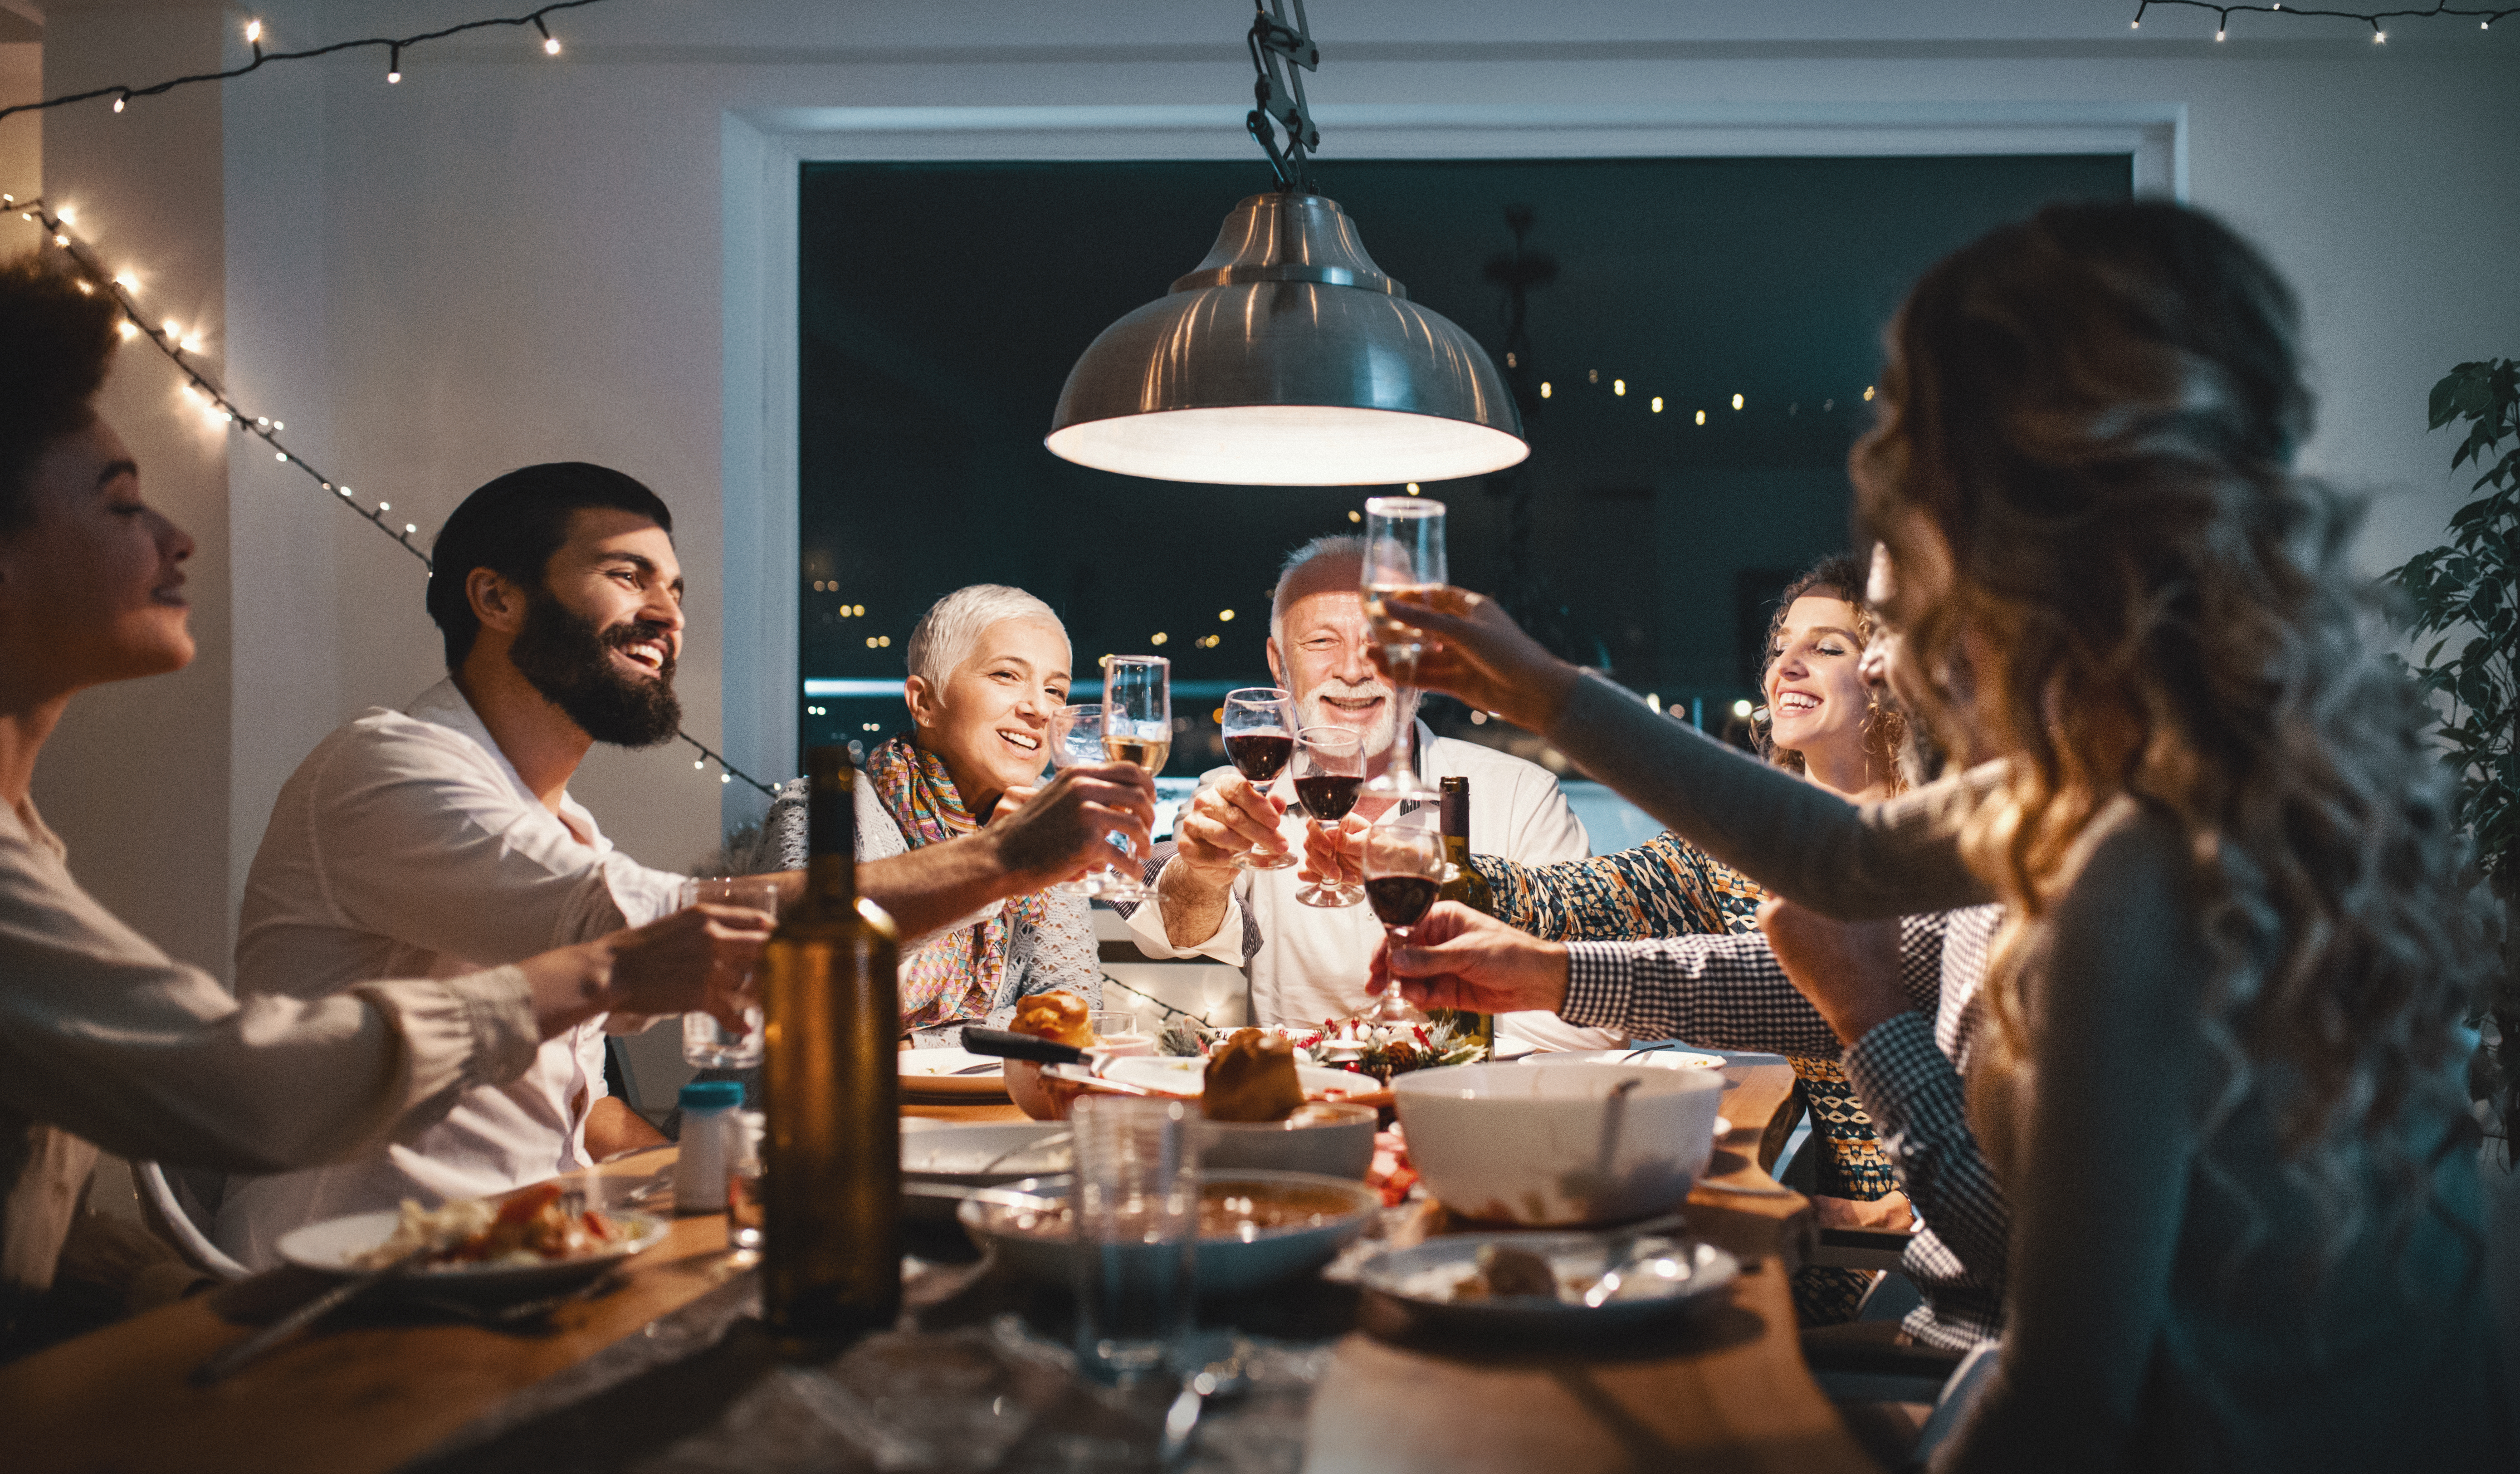 Une famille porte un toast pendant le dîner | Source : Getty Images